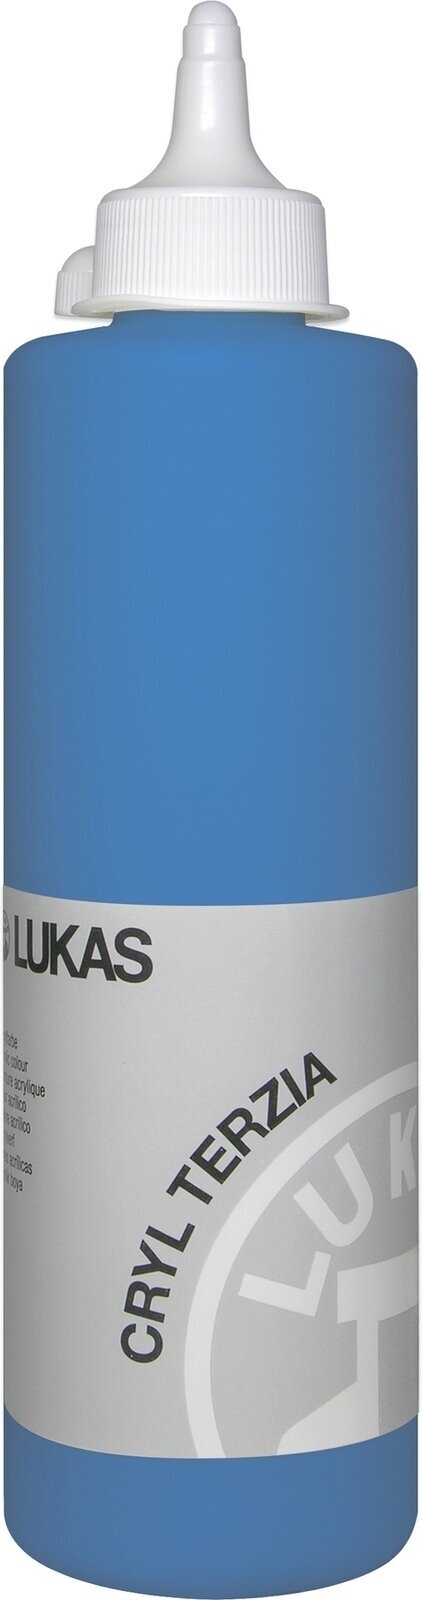 Akrylová farba Lukas Cryl Terzia Akrylová farba 500 ml Primary Blue